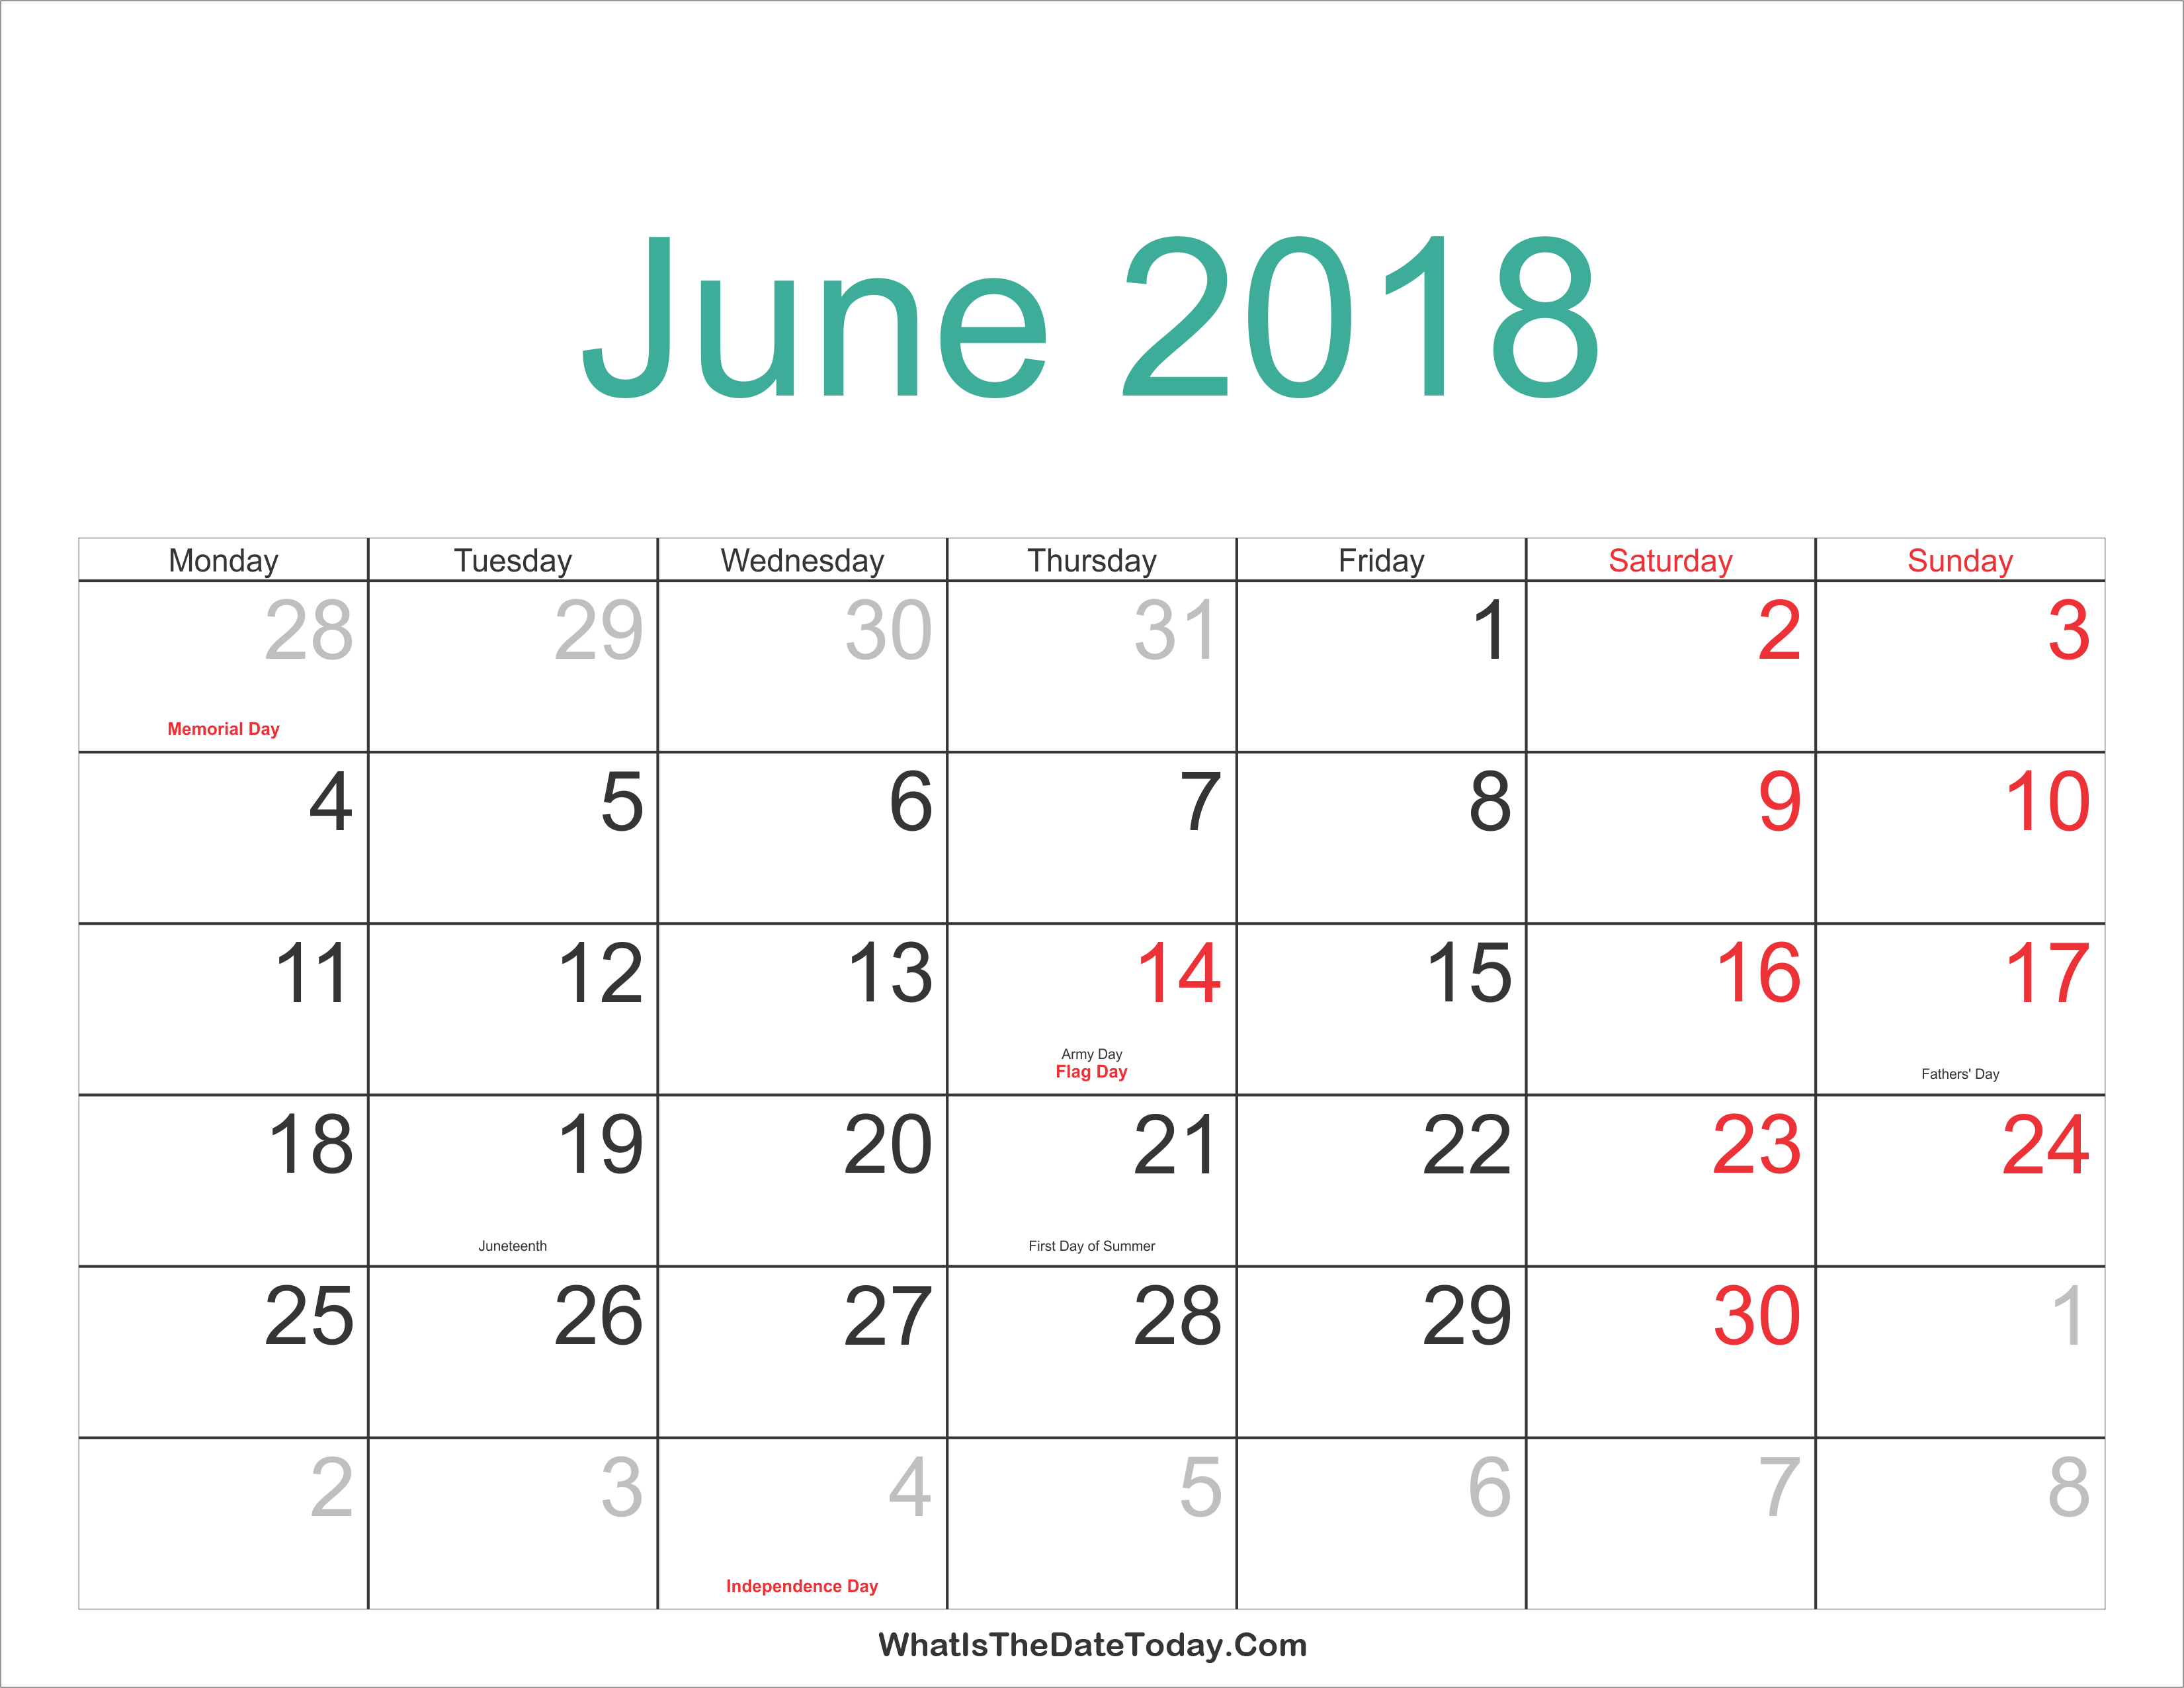 june 2018 calendar templates whatisthedatetoday com